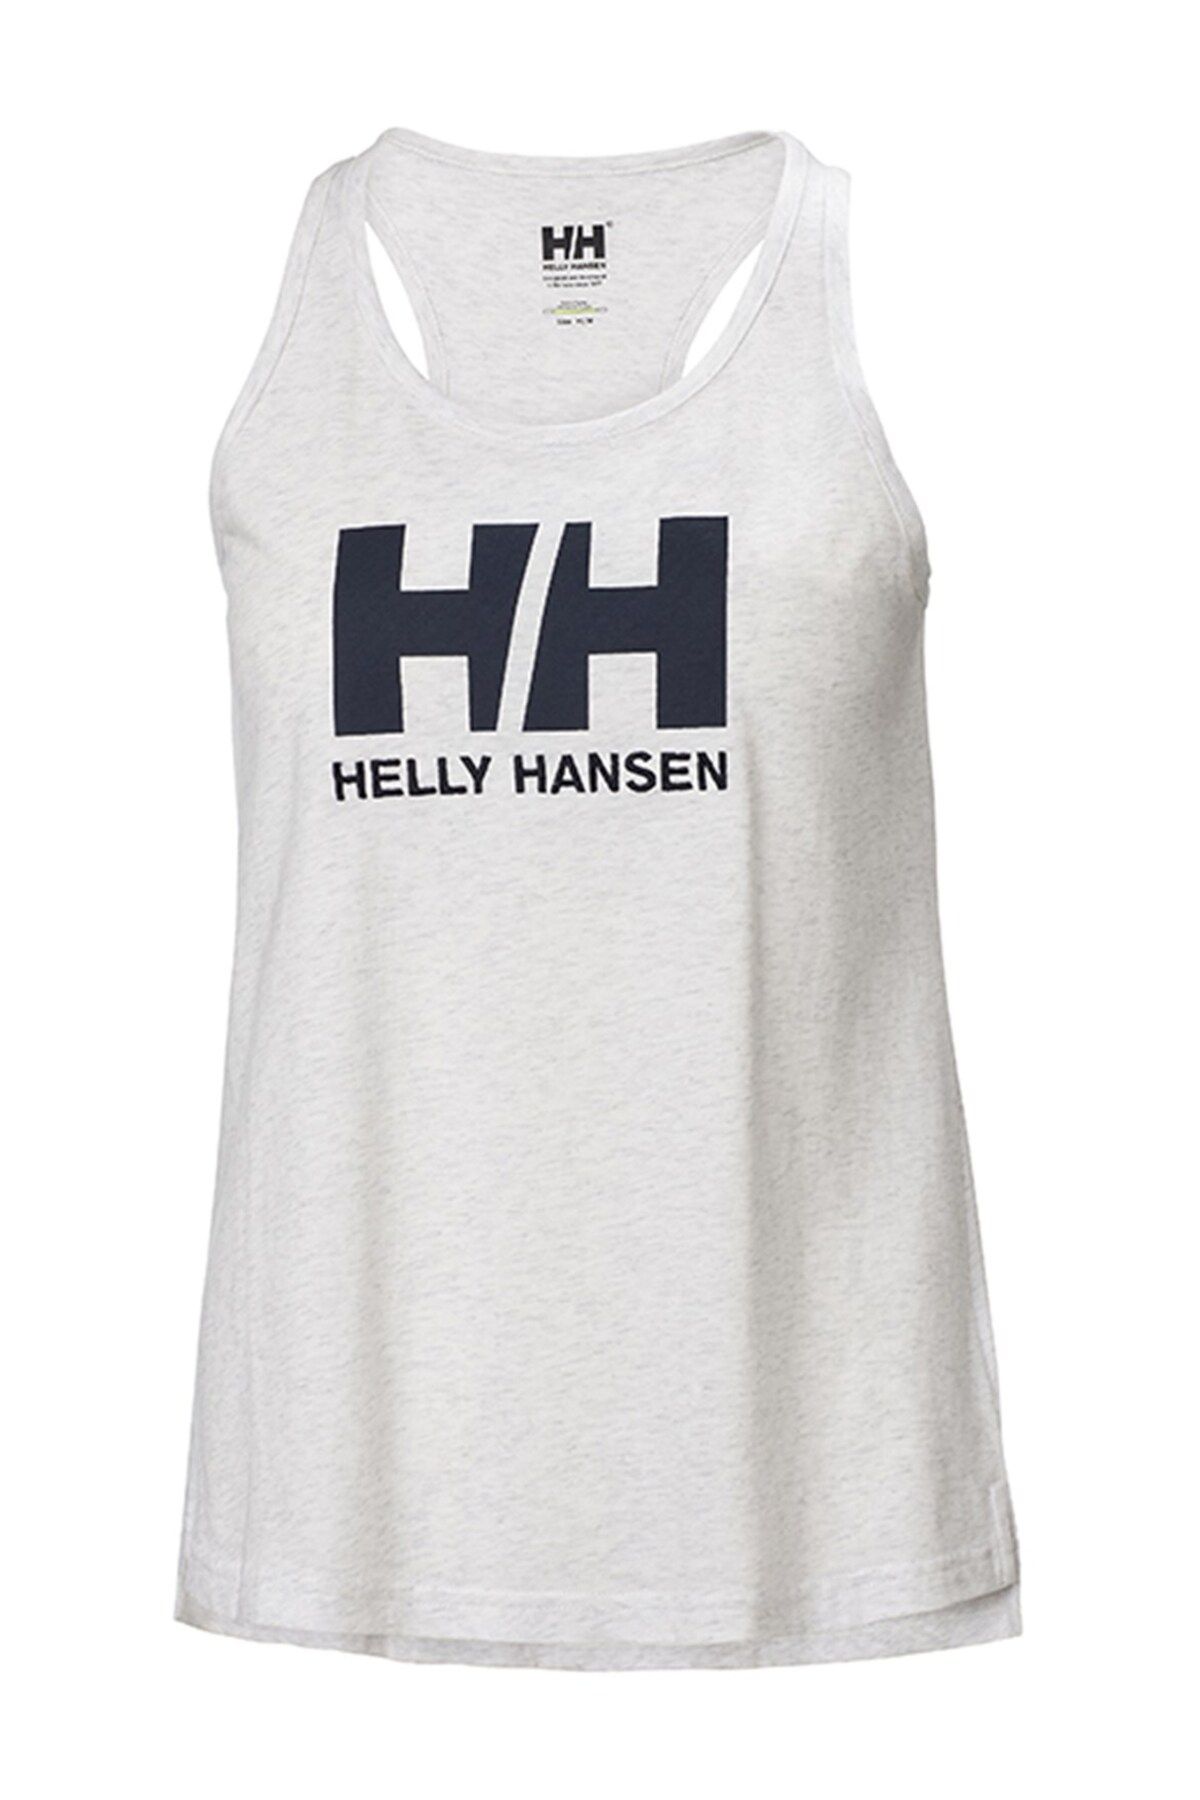 Helly Hansen W Hh Logo Sınglet